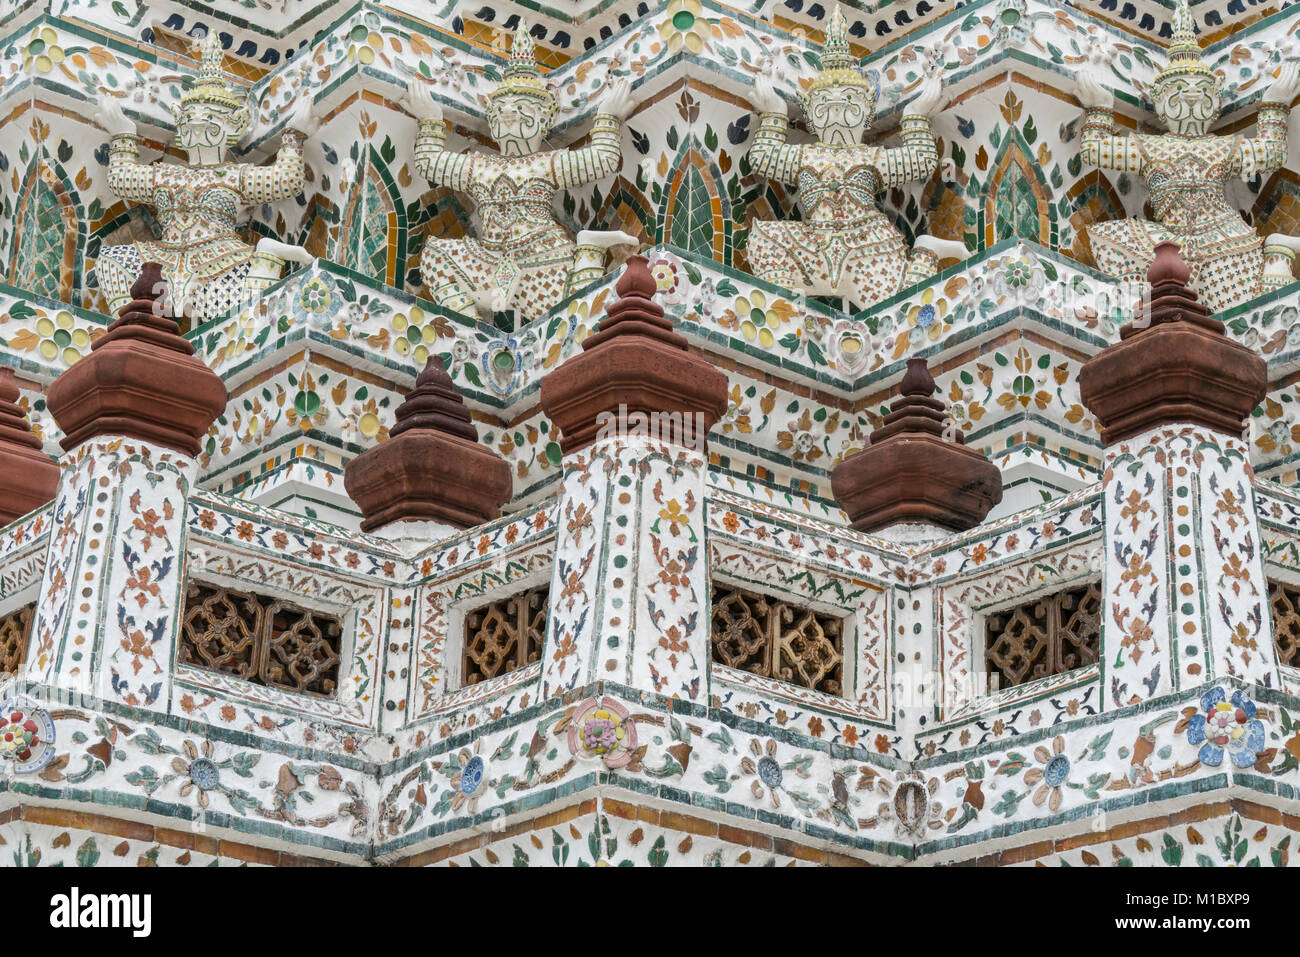 Un dettaglio delle decorazioni esterne di Wat Arun tempio a Bangkok, in Thailandia Foto Stock